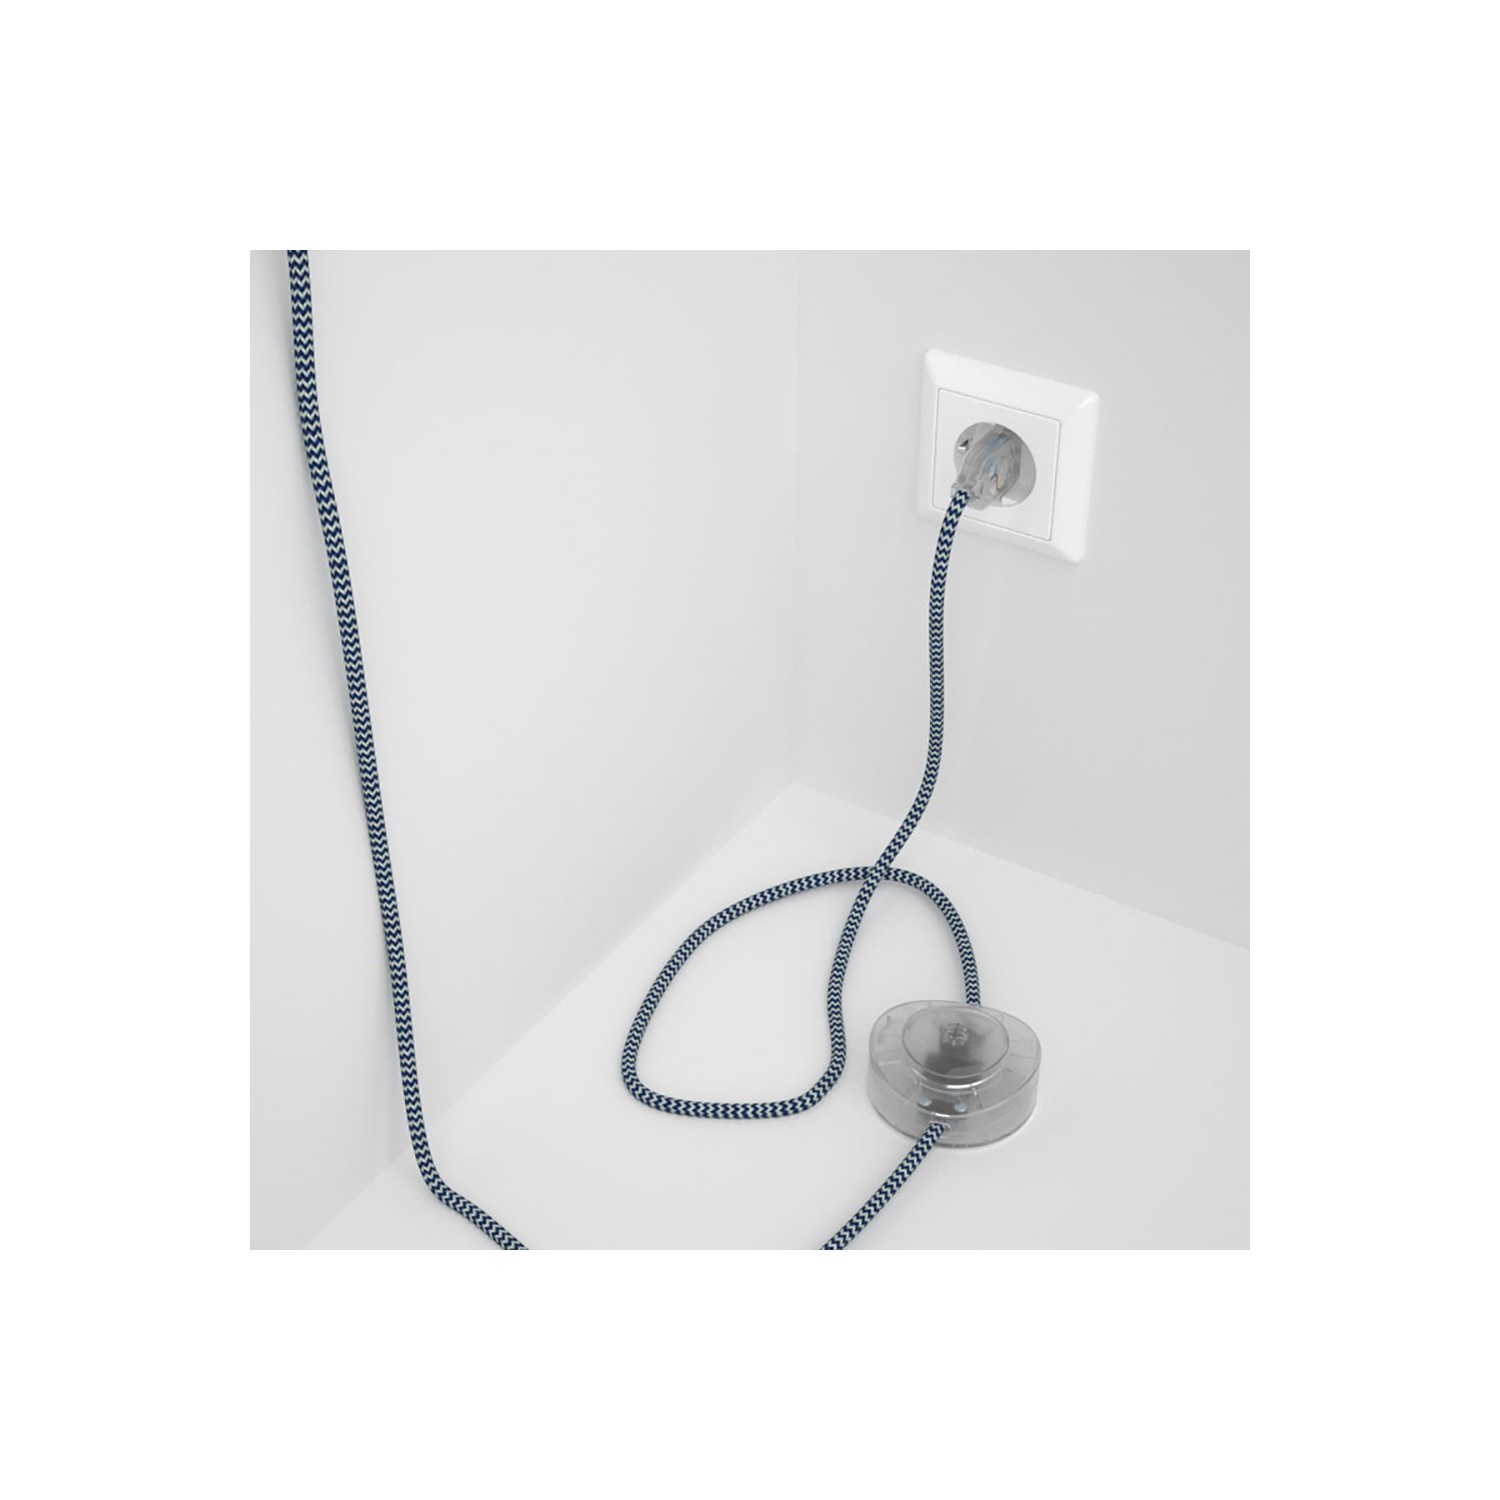 Cordon pour lampadaire, câble RZ12 Effet Soie ZigZag Blanc-Bleu 3 m. Choisissez la couleur de la fiche et de l'interrupteur!